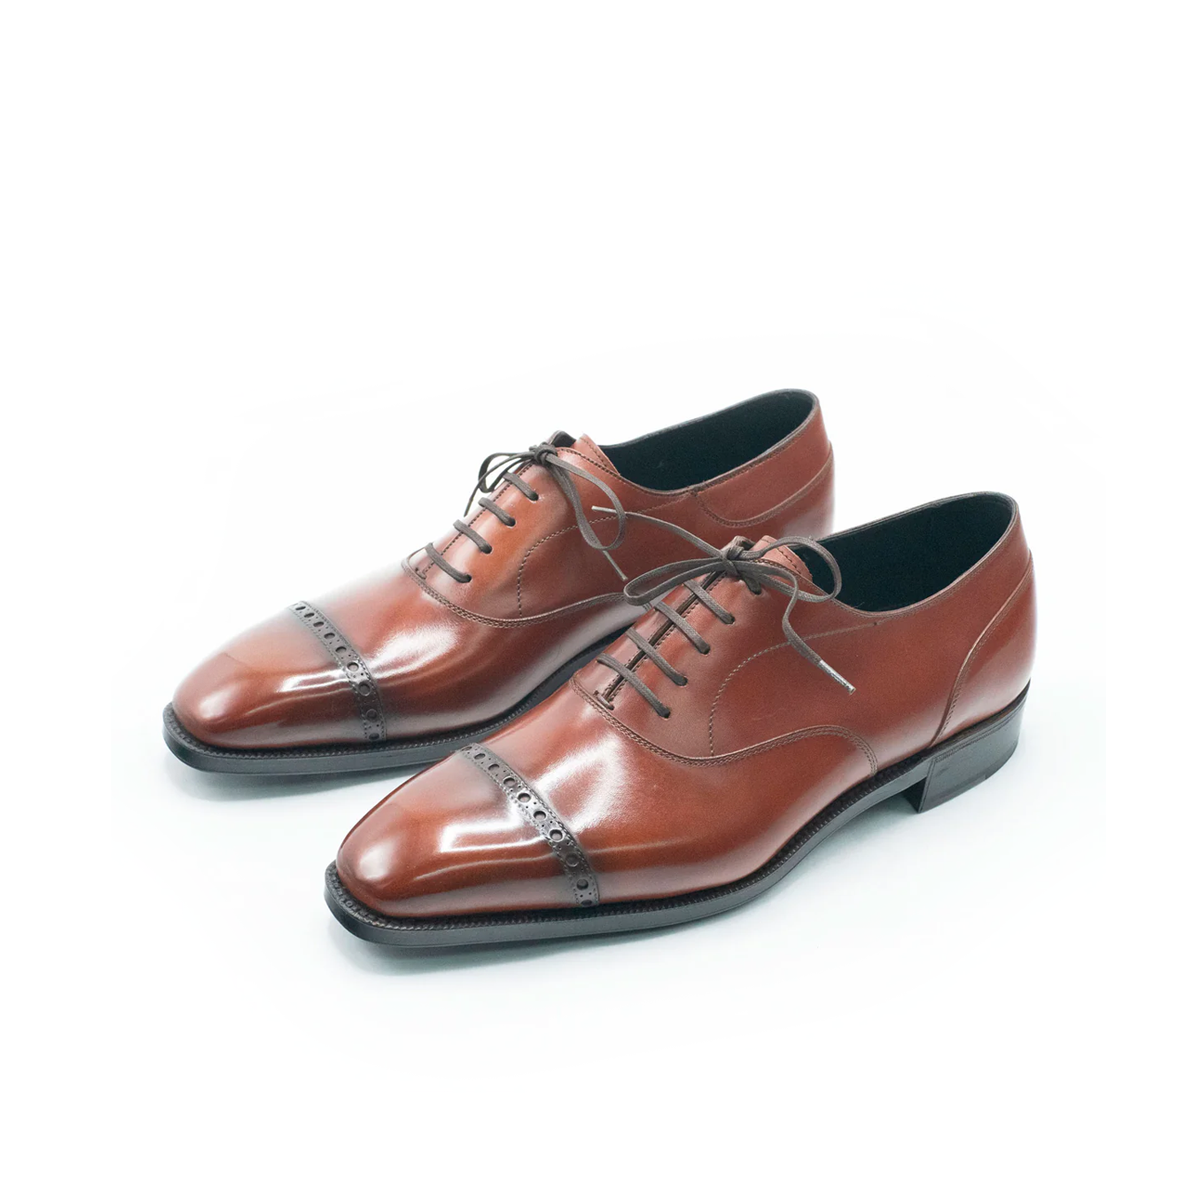 Oliver Saddle Oxford Shoes